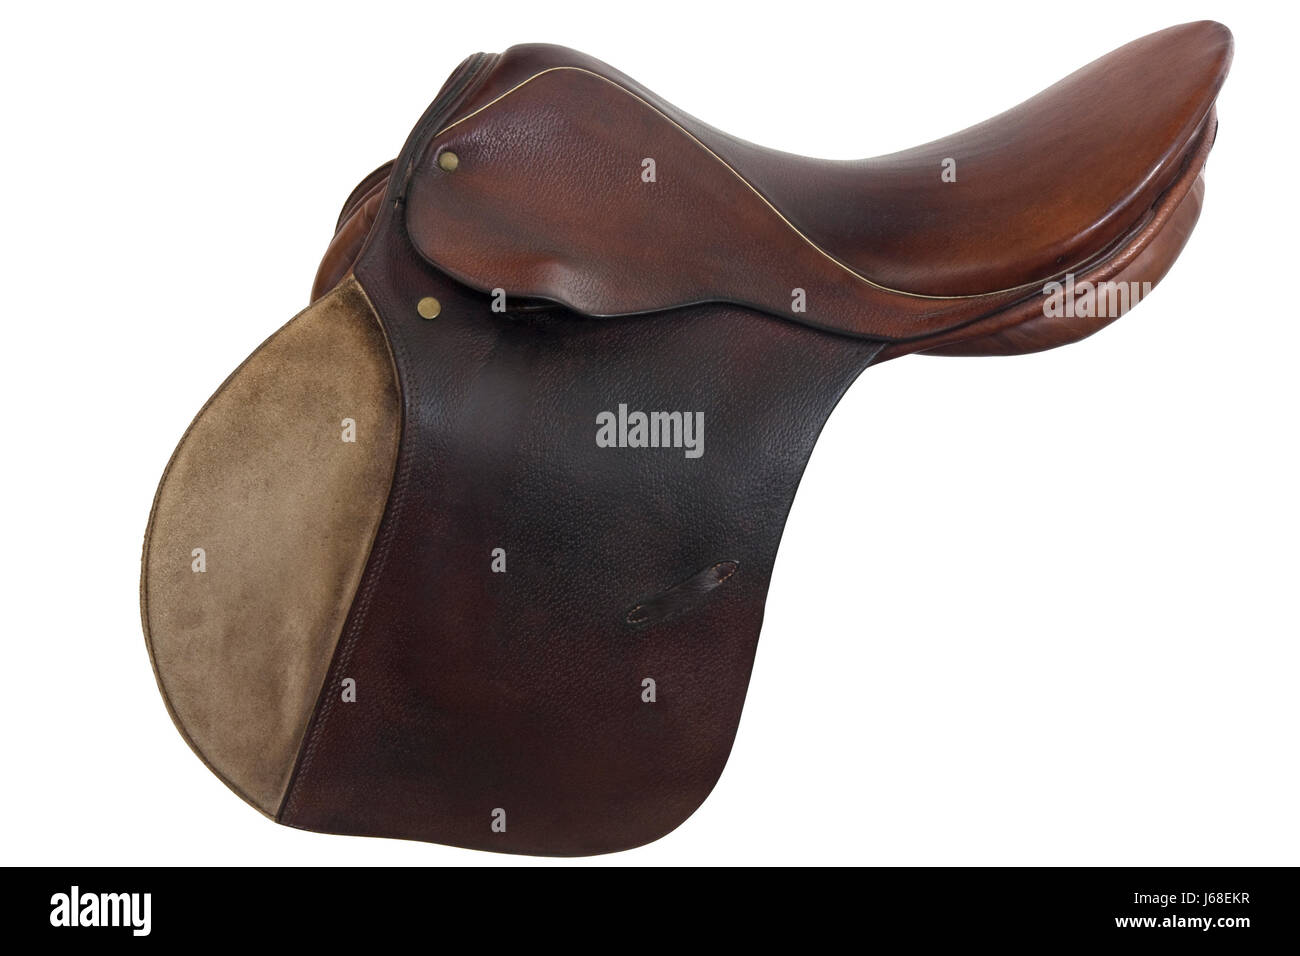 Brown cheval selle en cuir brun brunette vintage anglais indiquer show Banque D'Images